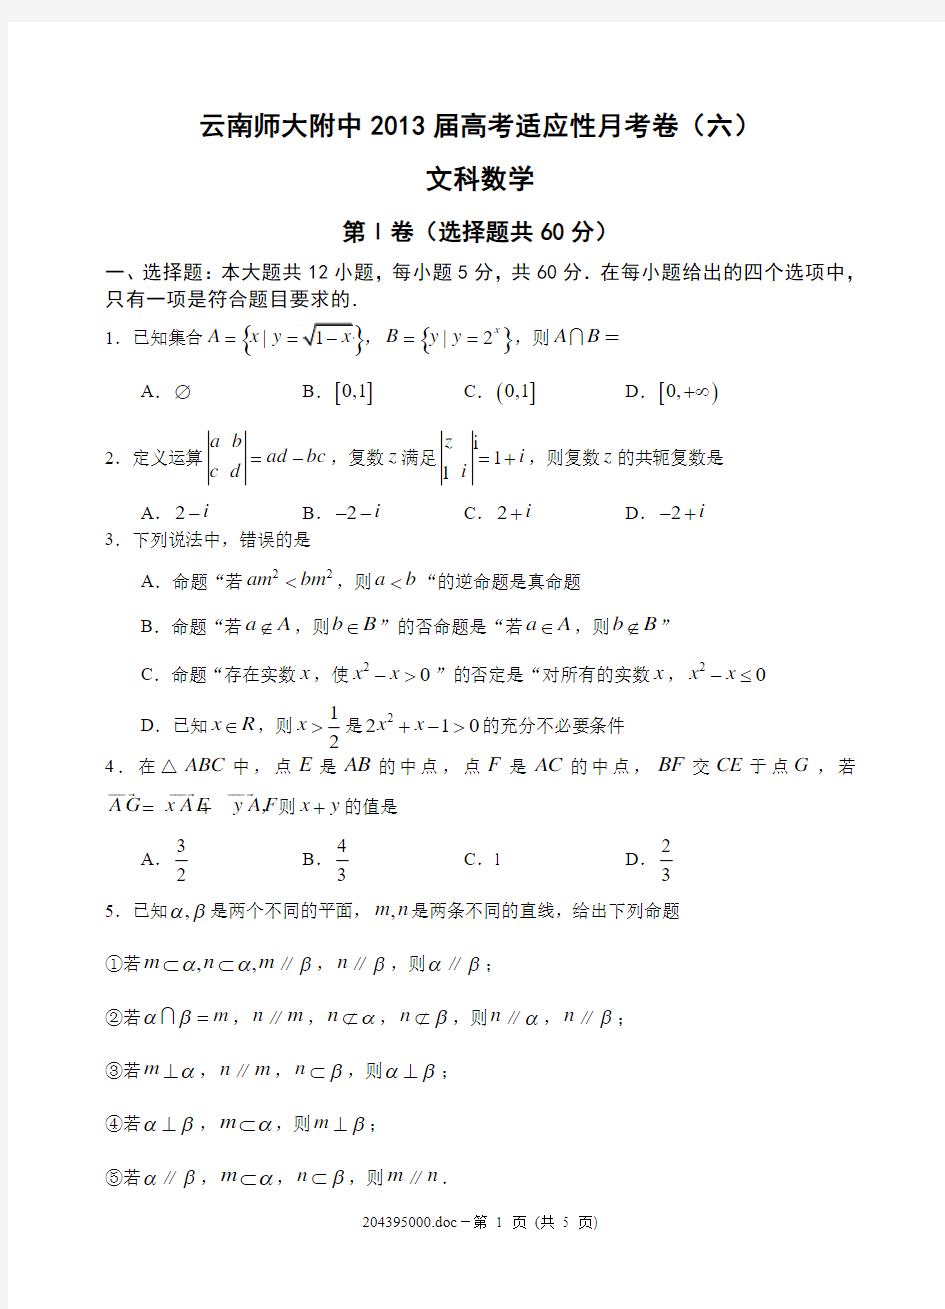 云南师大附中2013届高考适应性月考卷(六)文科数学学生